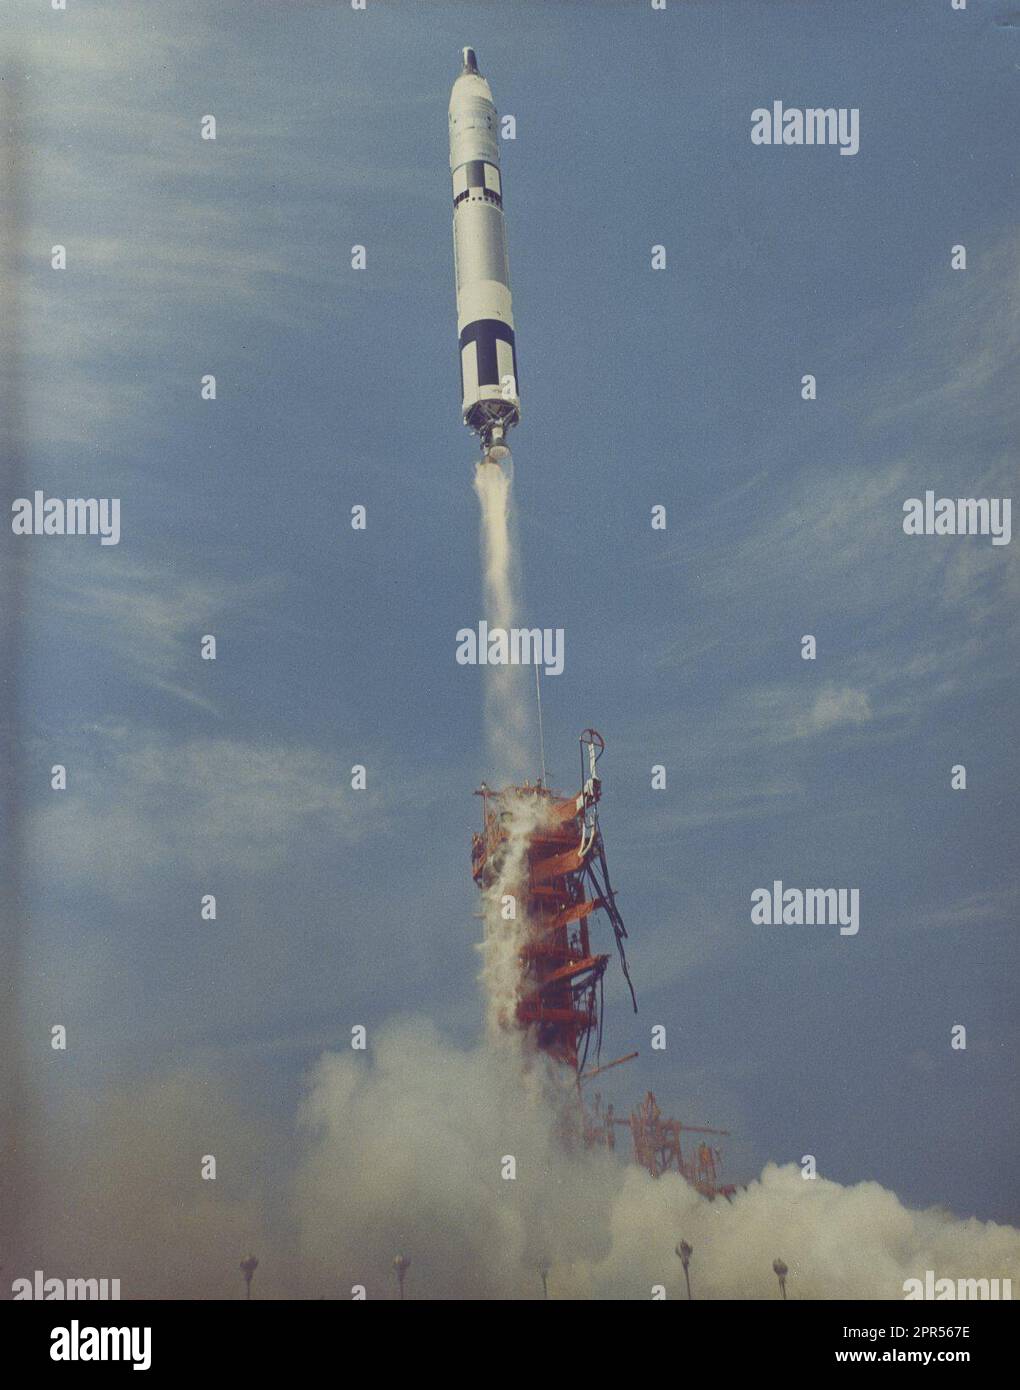 Un booster Titan ha lanciato la navicella Gemini 8 il 16 marzo 1966, dal complesso di lancio 19 Cape Kennedy, Florida. L'equipaggio di volo per la missione di 3 giorni prevista, gli astronauti Neil A. Armstrong e David R. Scott, hanno raggiunto il primo appuntamento e l'attracco ad Atlas/Agena in orbita terrestre. Ma la missione fu terminata presto a causa di un thruster malfunzionante sulla navicella spaziale Gemini. Foto Stock